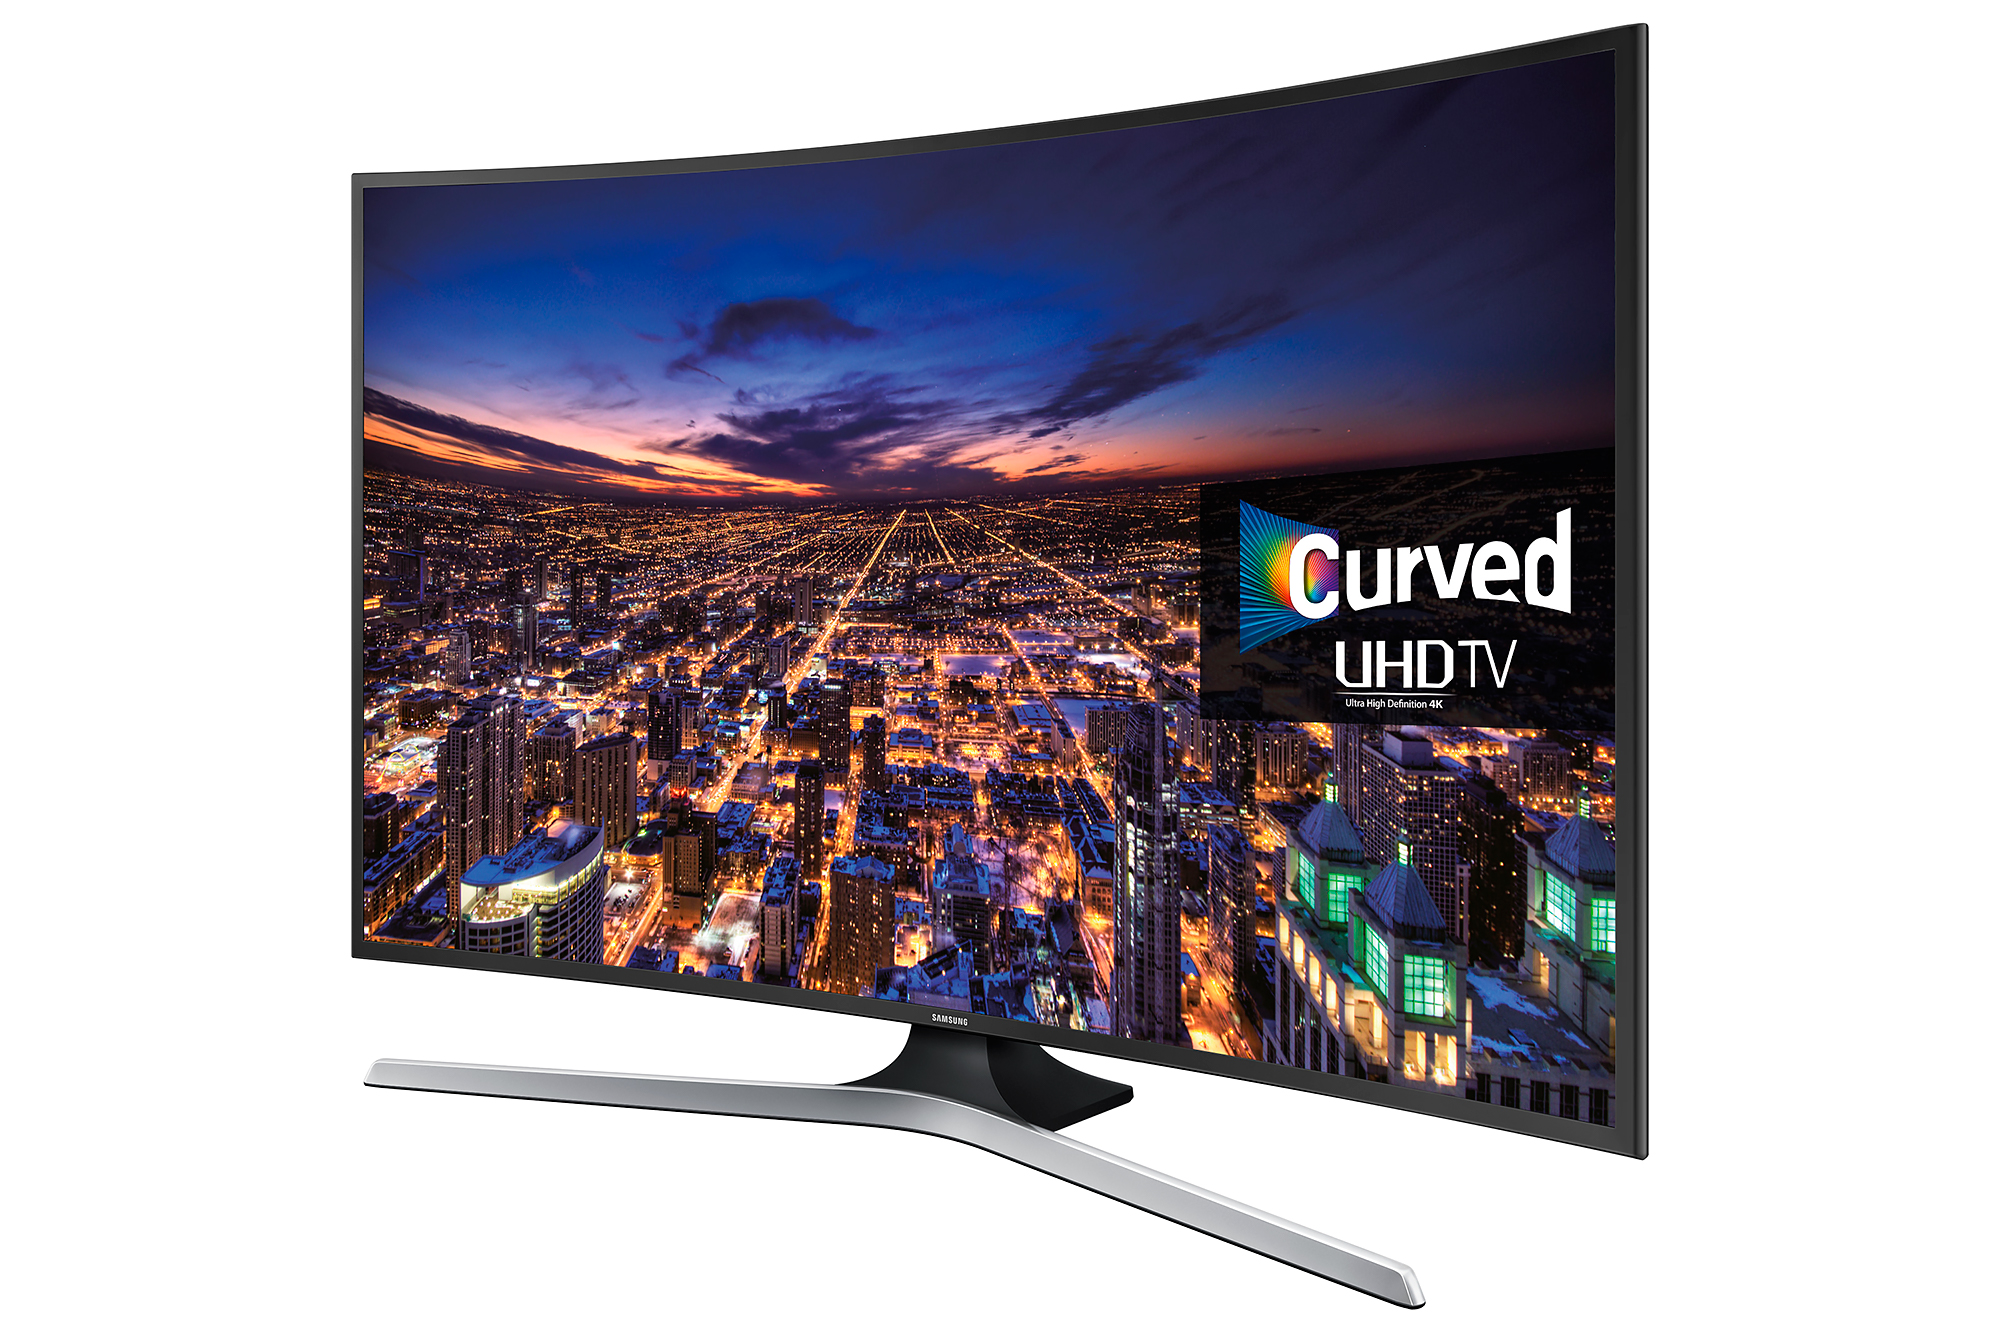 Телевизоры самсунг список. Samsung 6 Series 40 Smart TV. Samsung Curved UHD TV 6 Series 40.